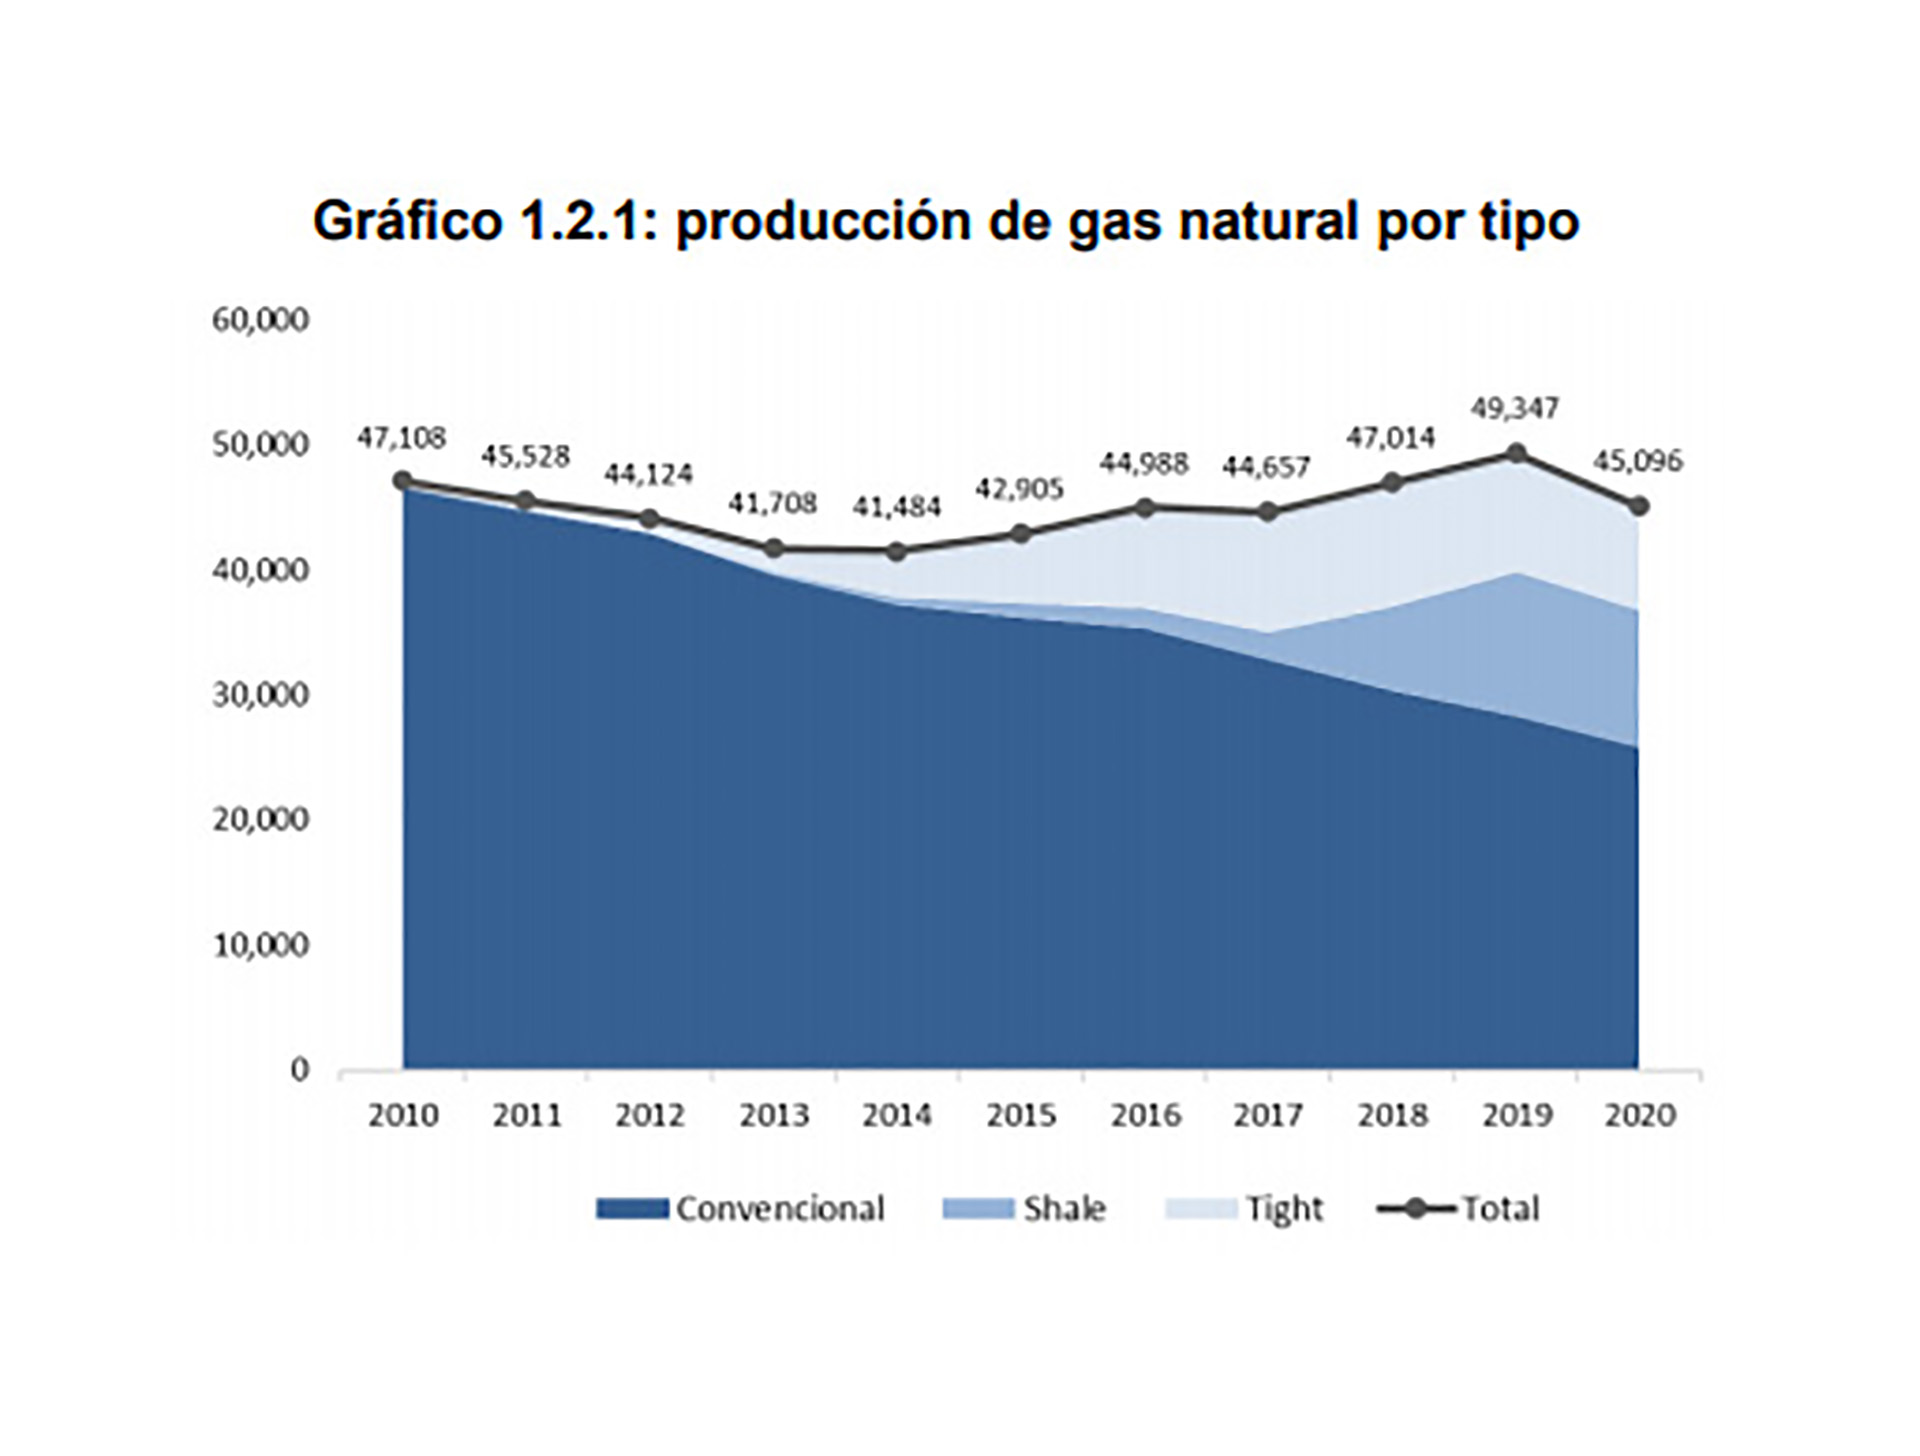 El gráfico, de un informe del IAE General Mosconi, permite apreciar la creciente importancia de la producción de gas "no convencional" (shale y tight) en la dieta energética argentina